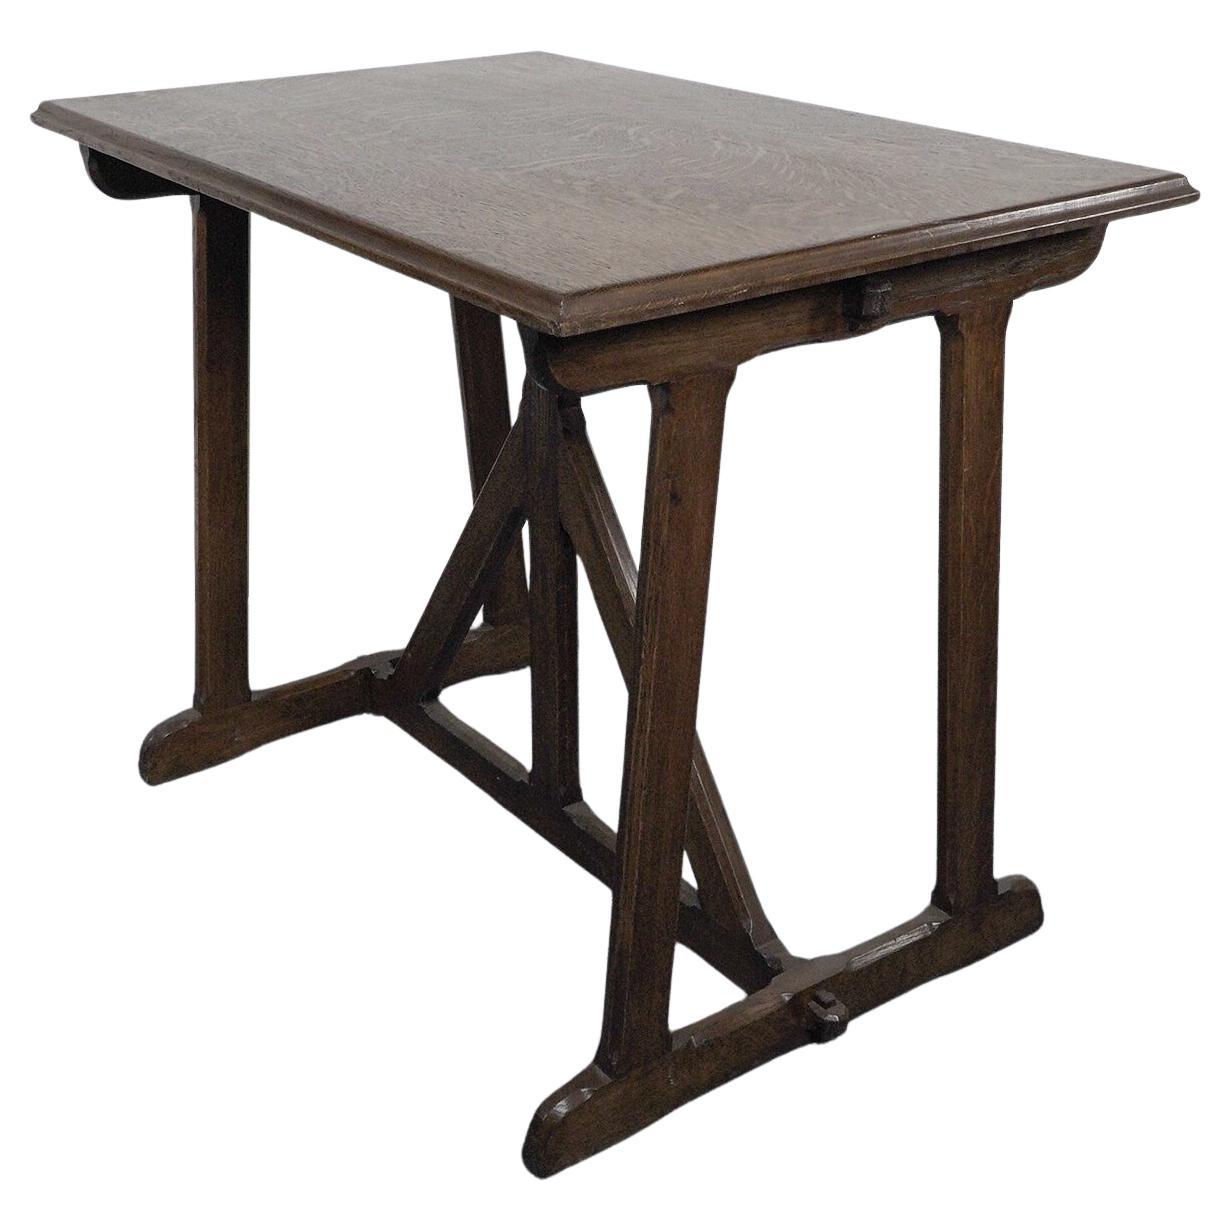 A W N Pugin, d'après un dessin de. Table en chêne de style Revive gothique de la fin du 20e siècle